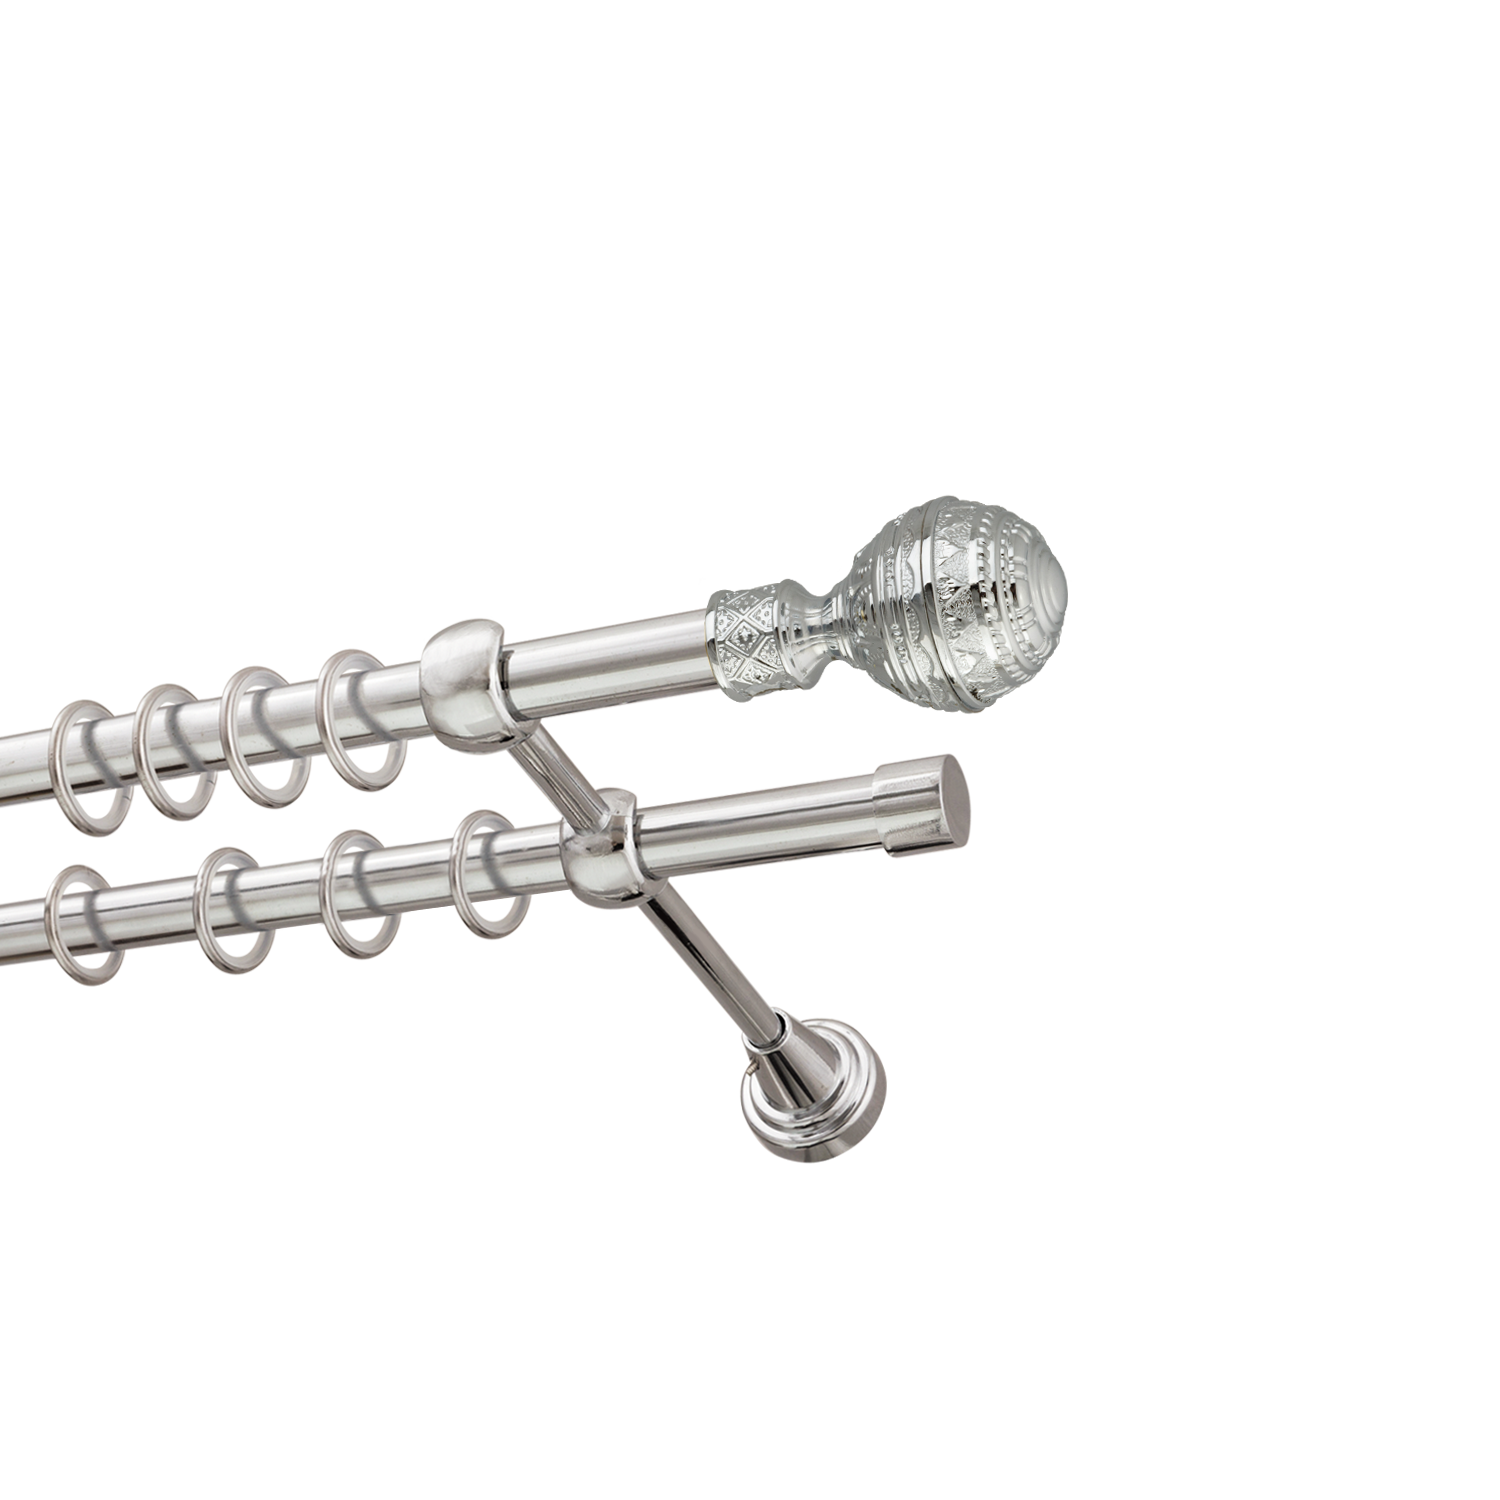 Металлический карниз для штор Роял, двухрядный 16/16 мм, серебро, гладкая штанга, длина 200 см - фото Wikidecor.ru